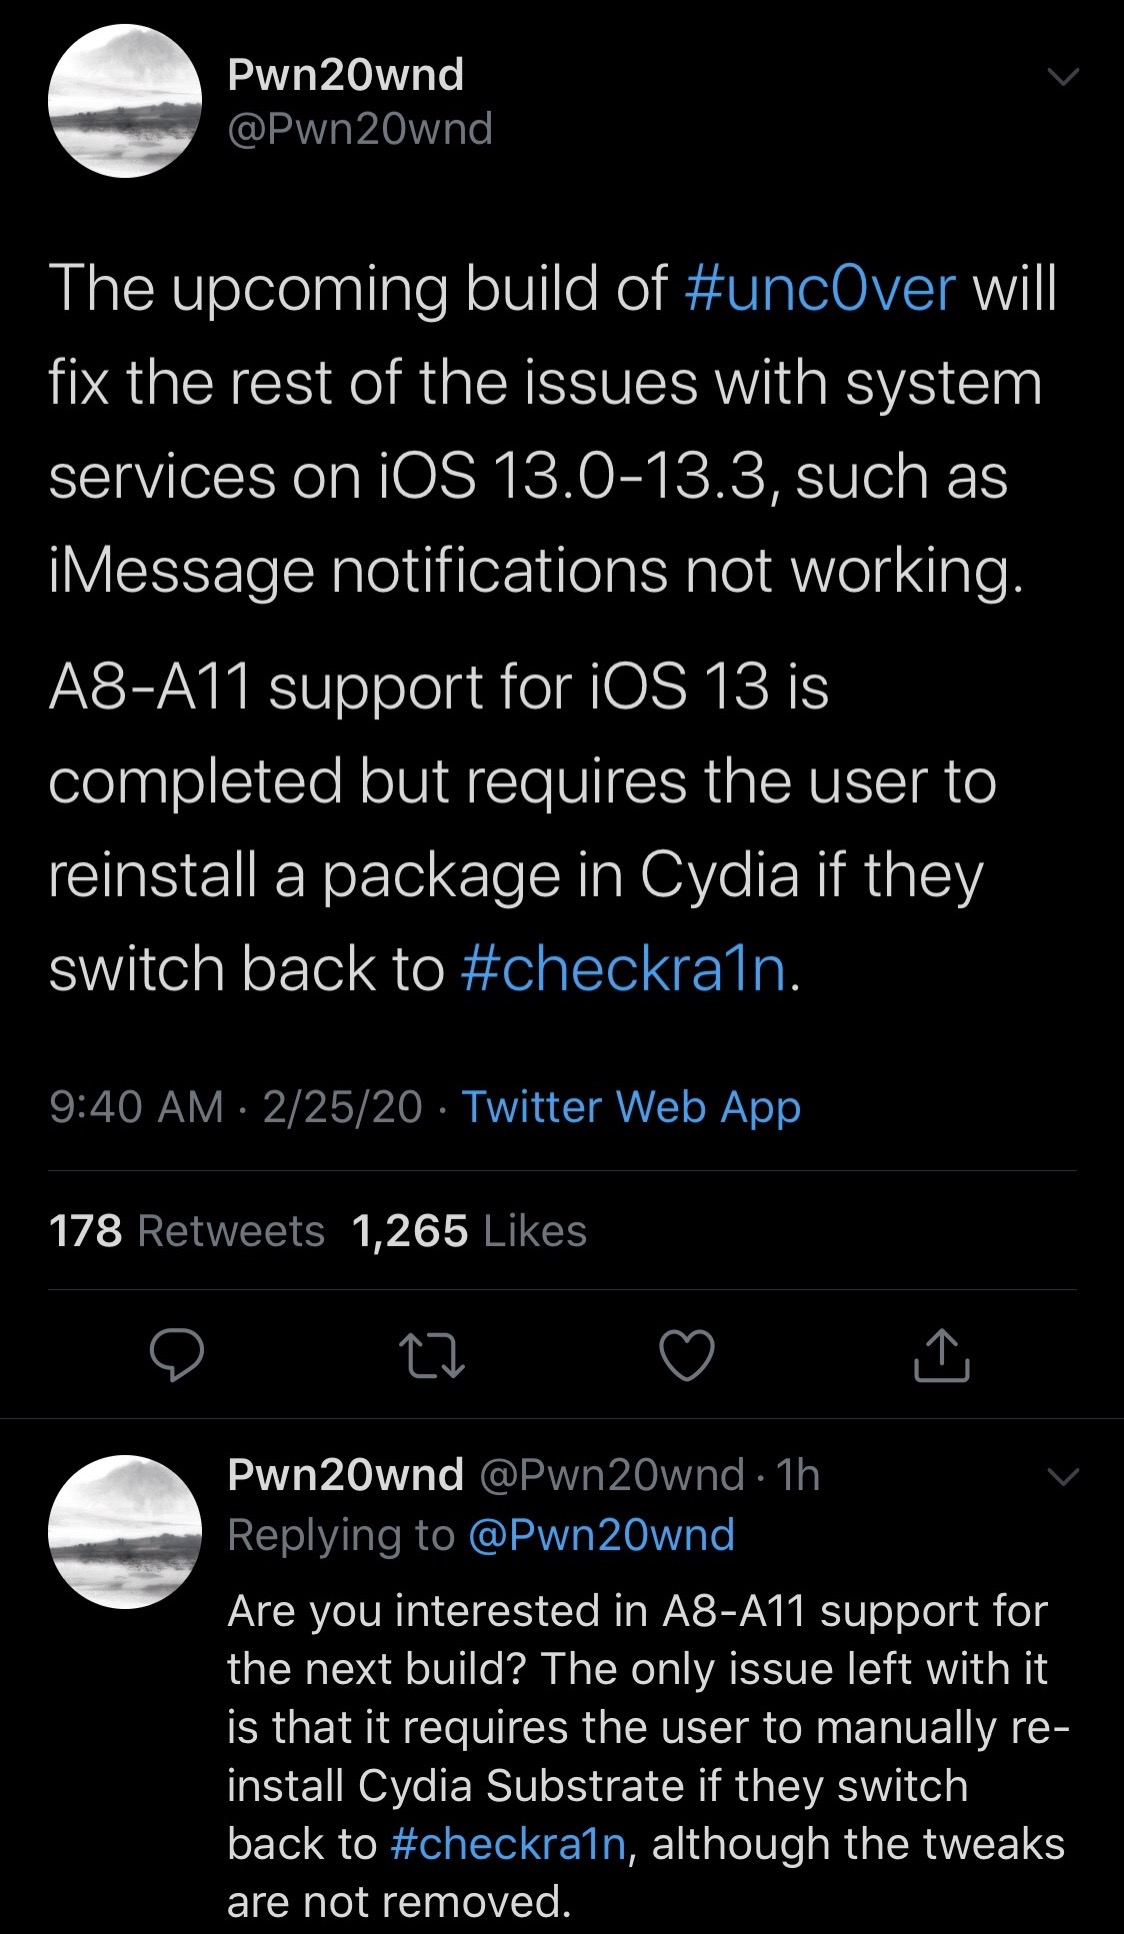 Pembaruan unc0ver yang akan datang untuk mendukung iOS 13.0-13.3 pada perangkat A8-A11 3